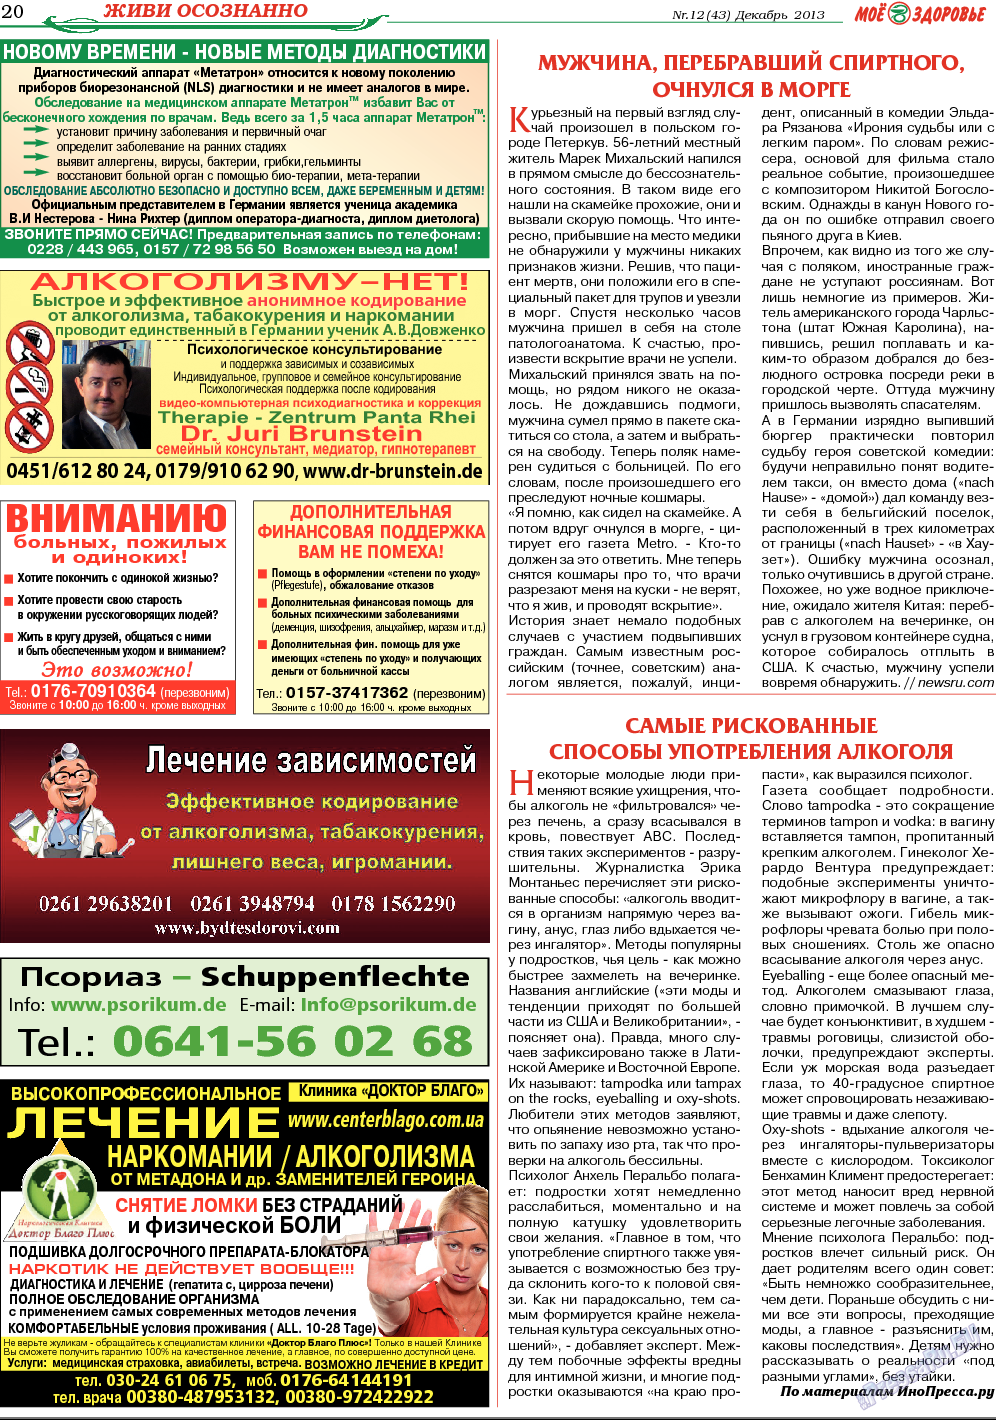 Кругозор, газета. 2013 №12 стр.20